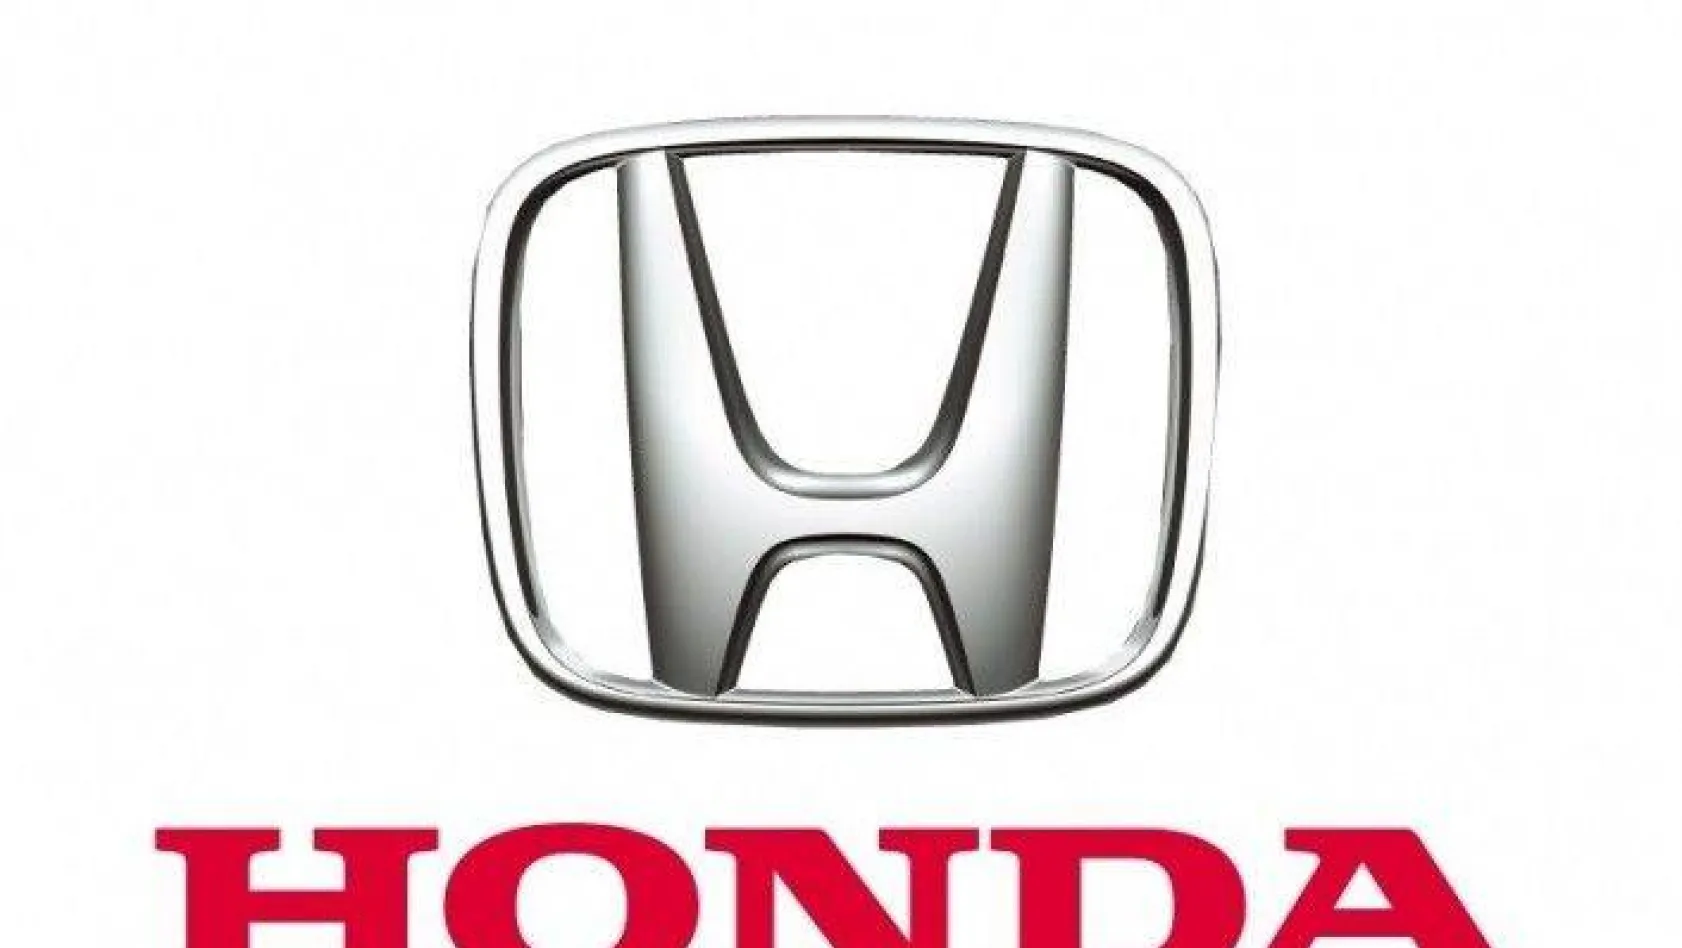 Honda Türkiye üretimini geçici bir süre durdurma kararı aldı